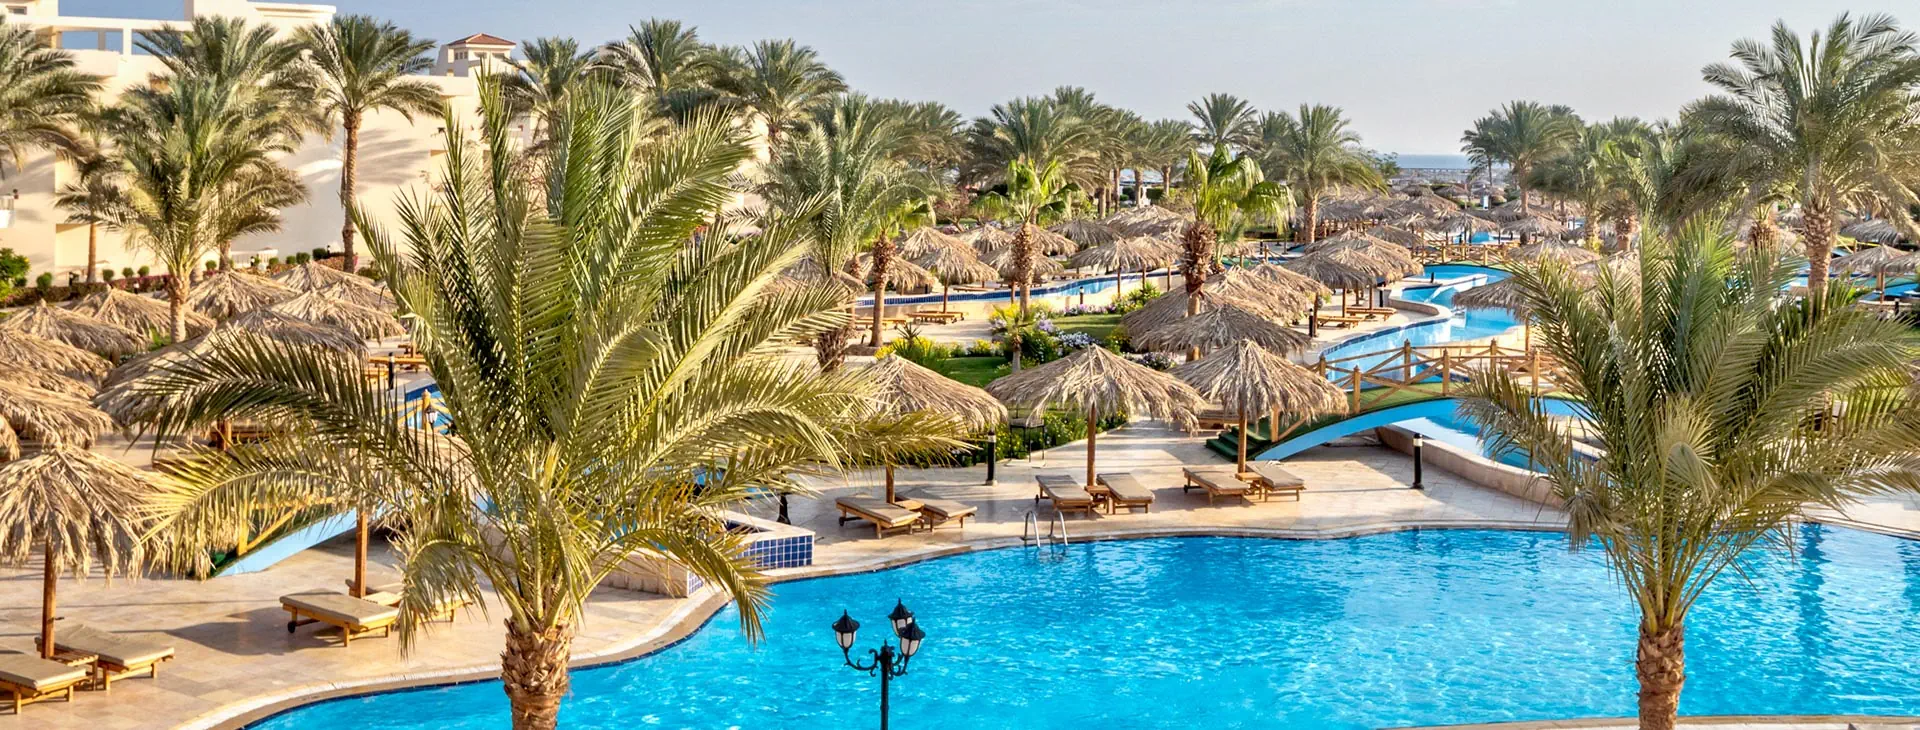 Egipt Hurghada Hurghada Long Beach Resort (ex. Hilton Long Beach)